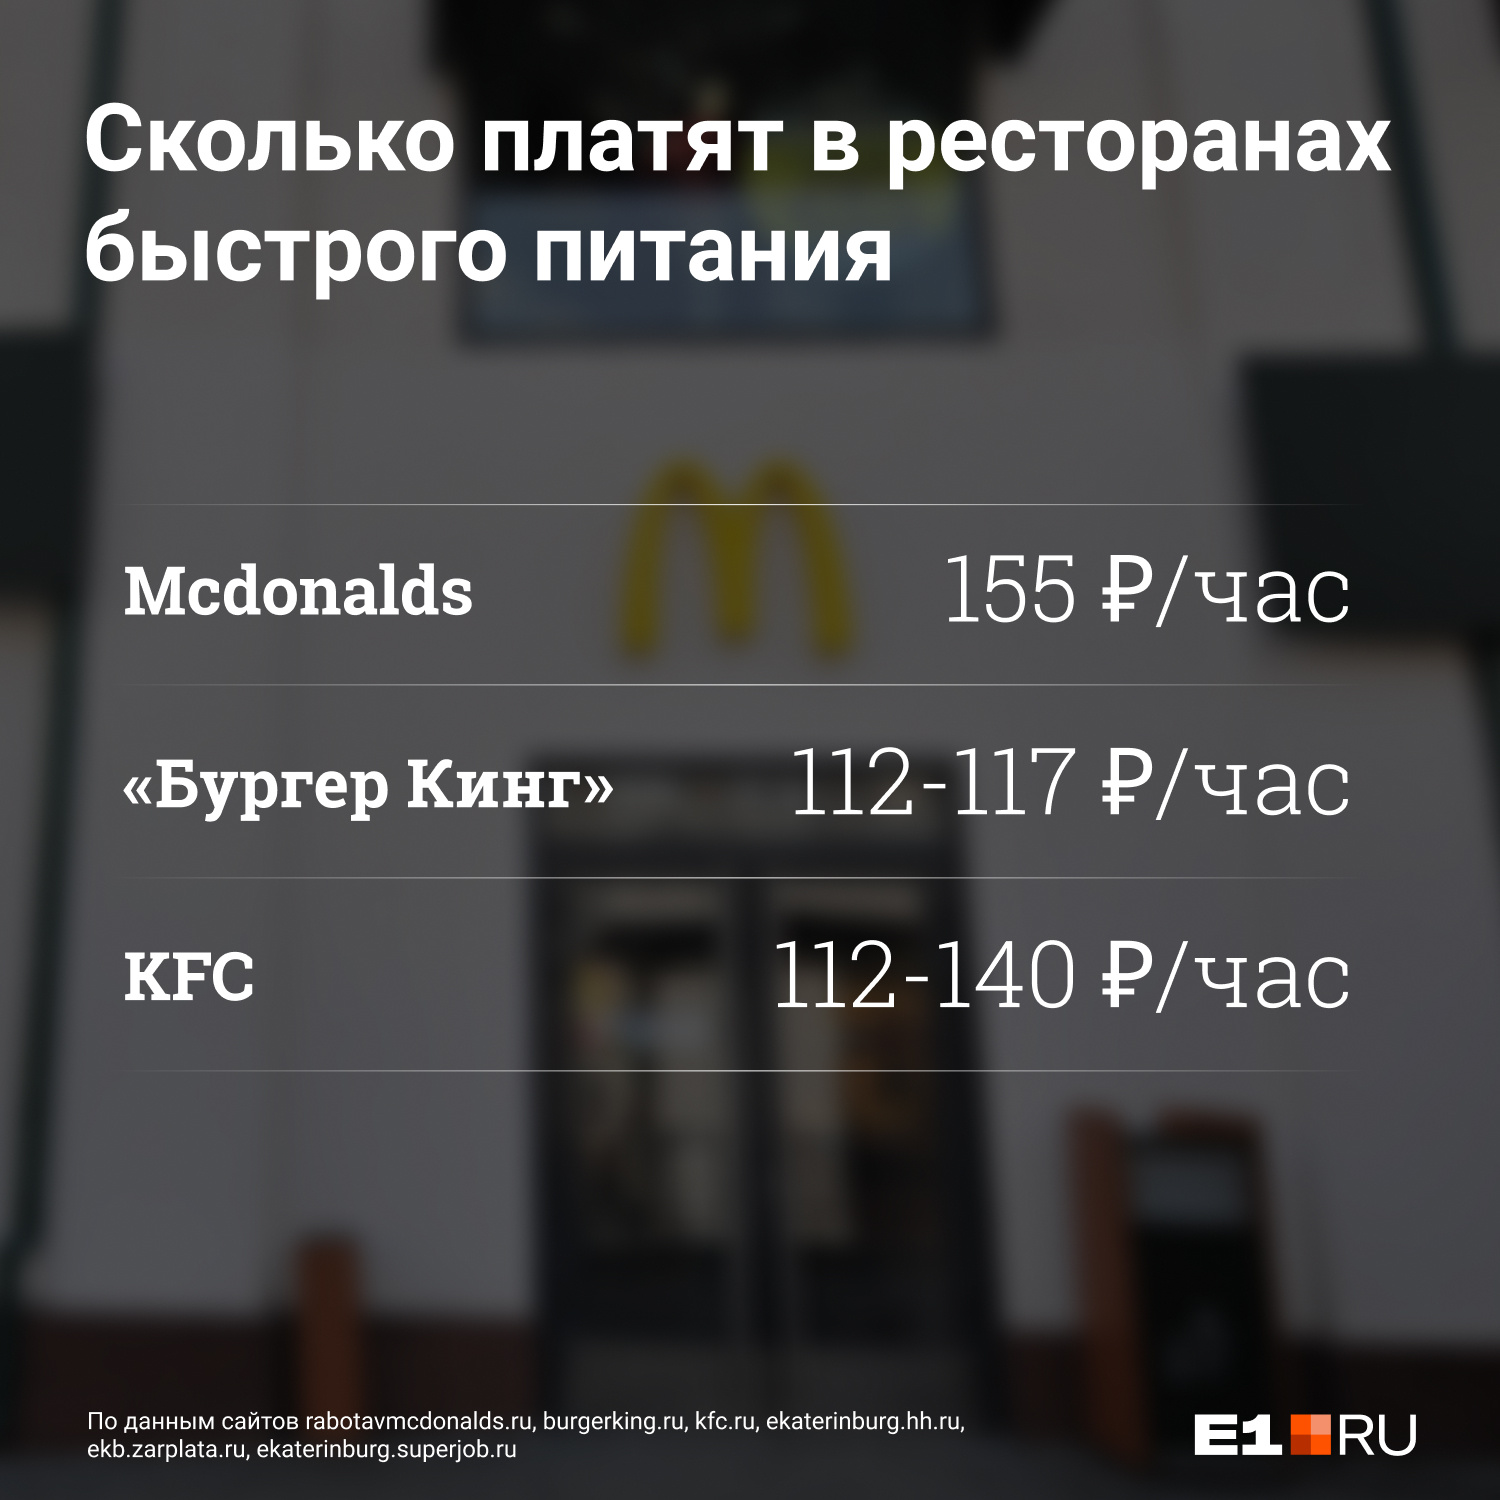 По телефону сообщили, что ставка — 155 руб/час, но сотрудники ресторана называют другую цифру — 120 руб/час